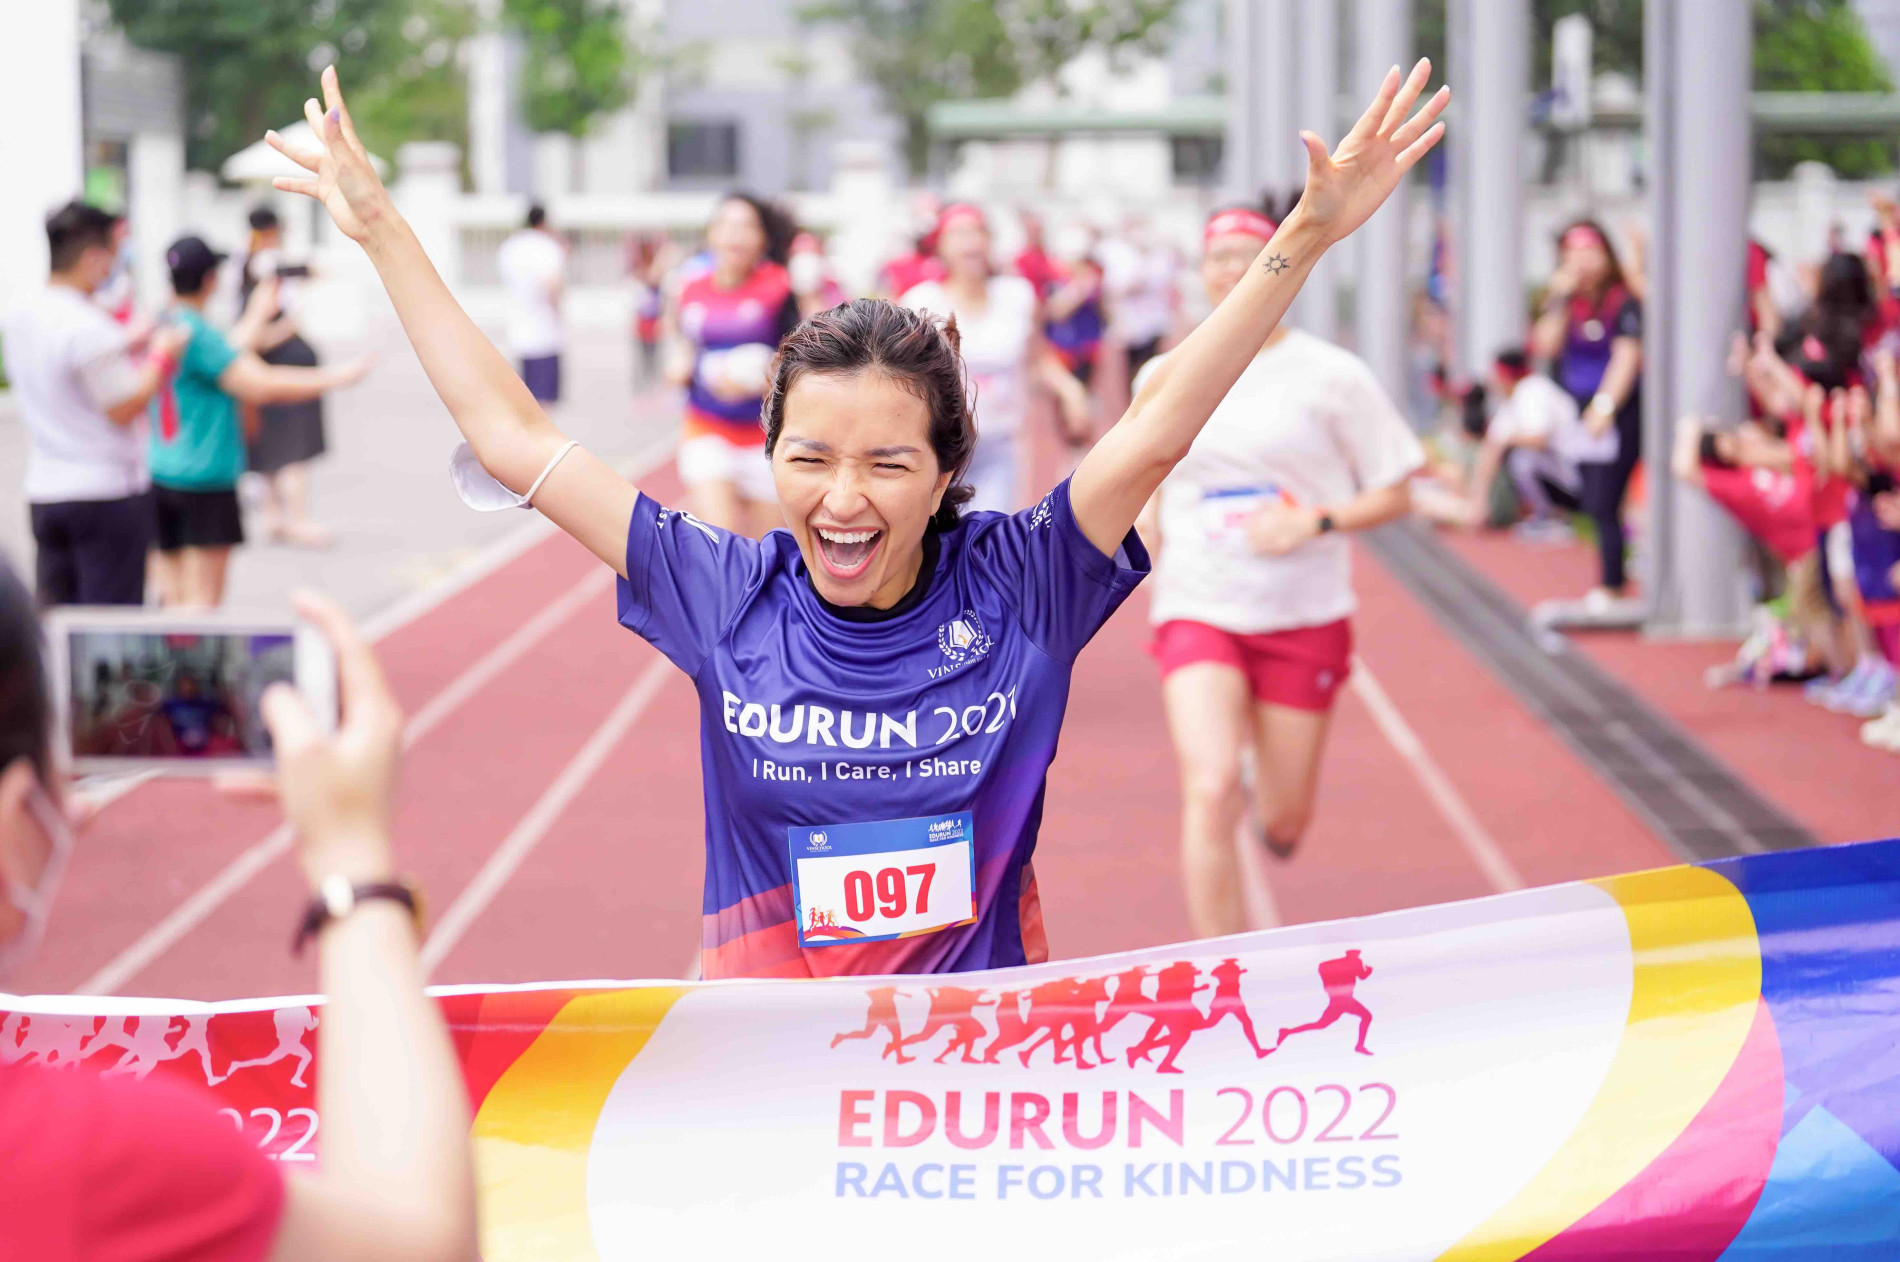 Giải chạy EDURUN thu hút khoảng 10.000 người tham gia là một trong những hoạt động tâm điểm tại lễ hội.